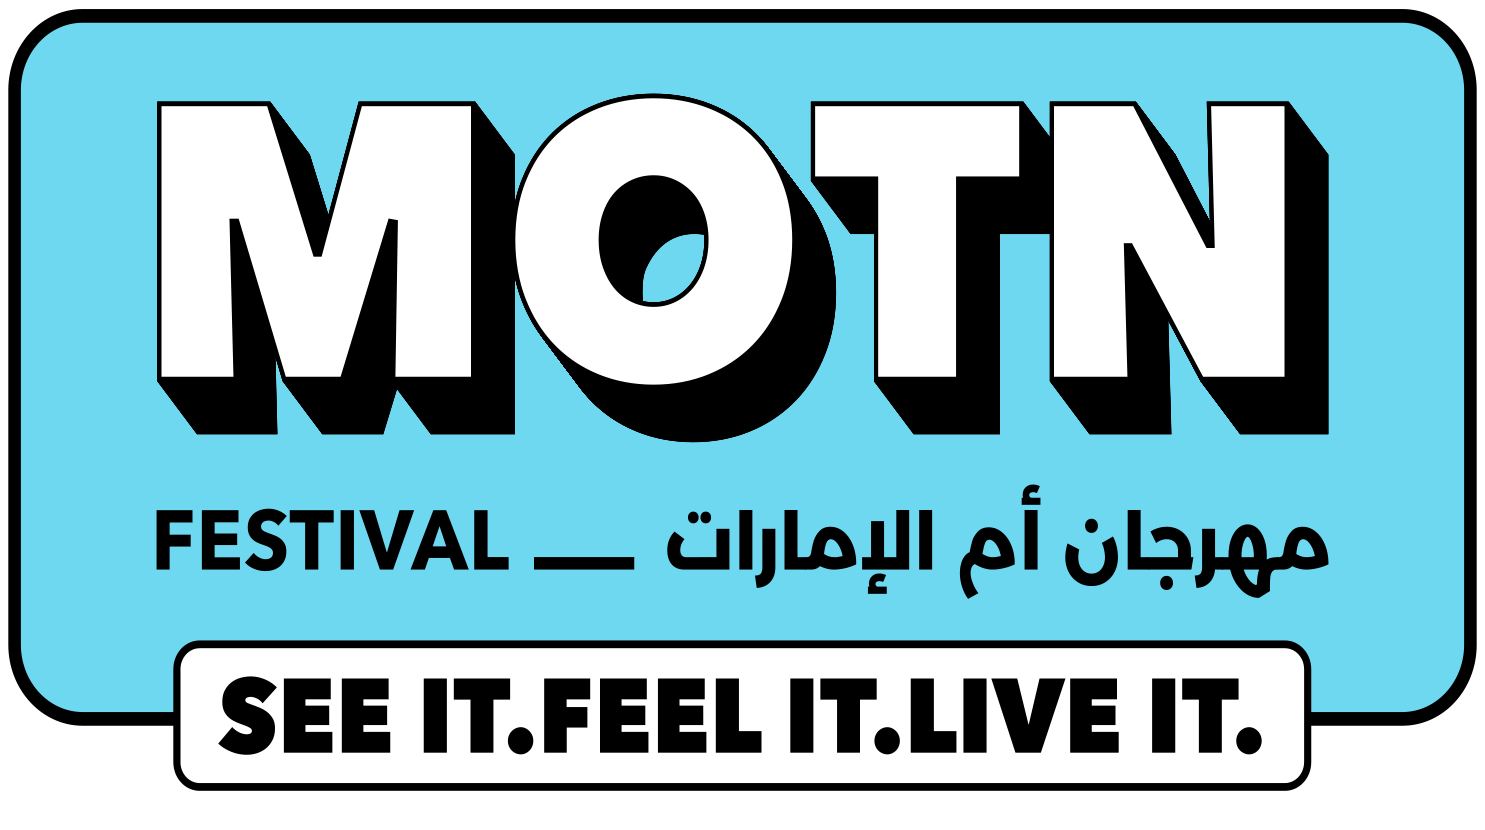 MOTN Festival is Back!